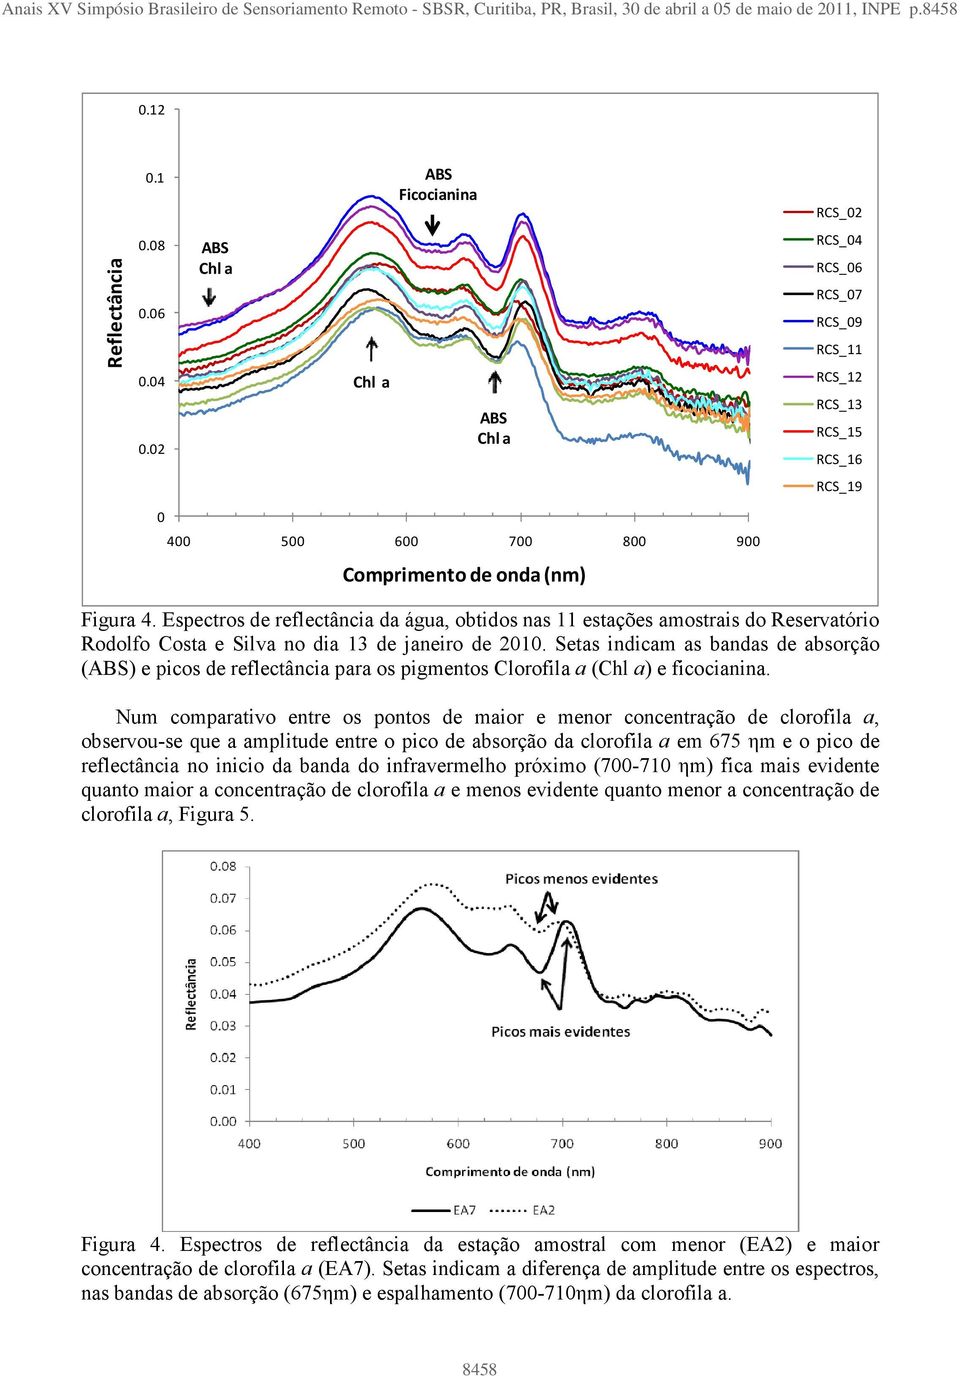 Espectros de reflectância da água, obtidos nas 11 estações amostrais do Reservatório Rodolfo Costa e Silva no dia 13 de janeiro de 2010.